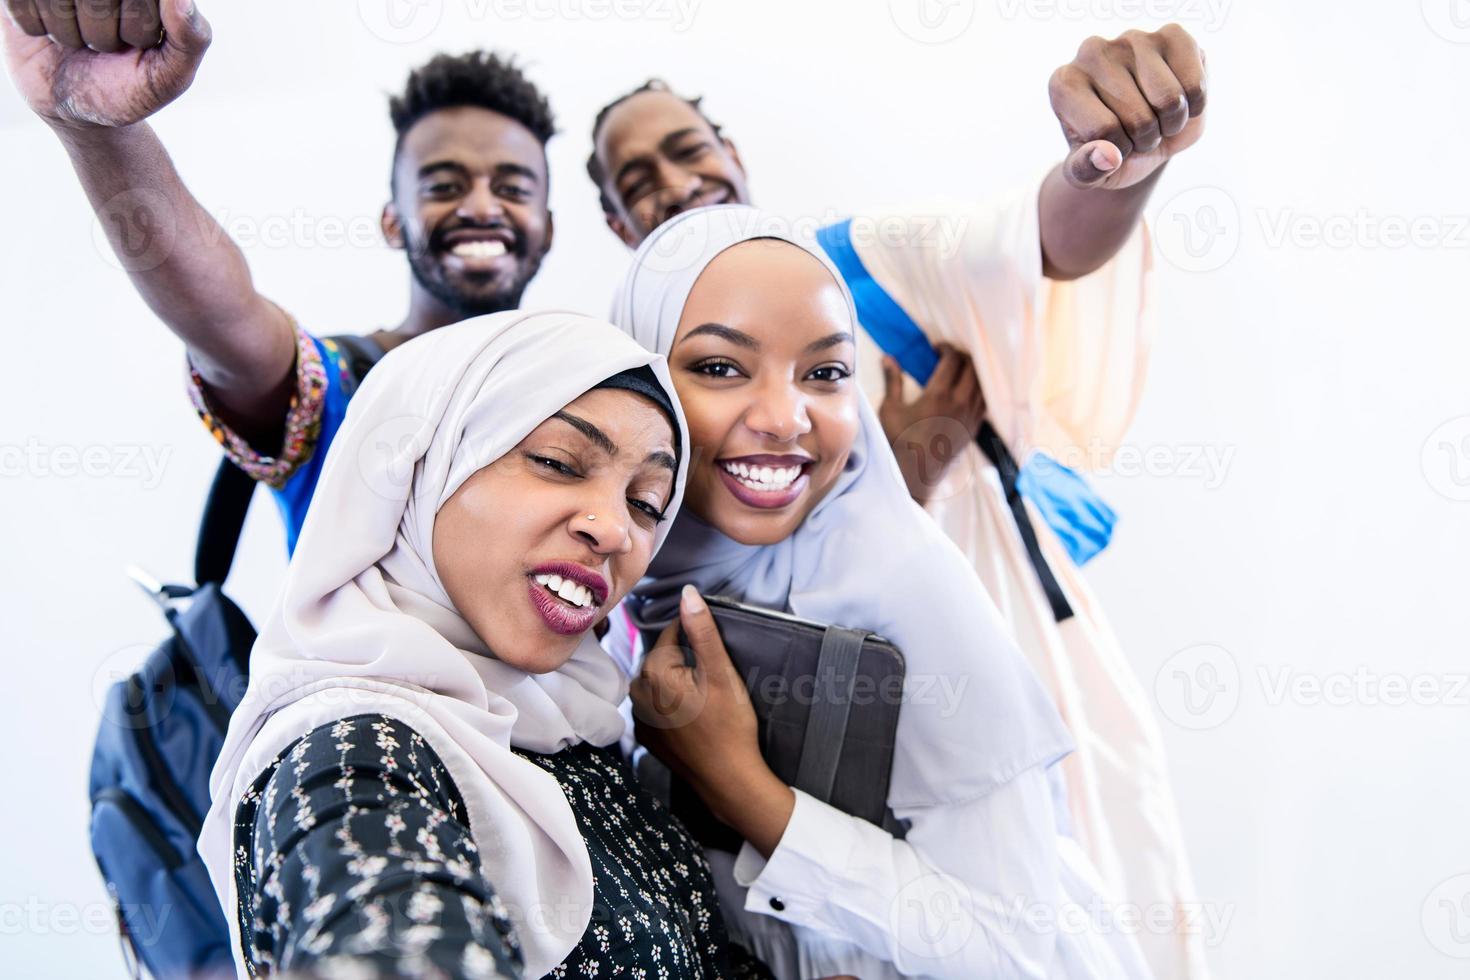 retrato do grupo de estudantes africanos foto